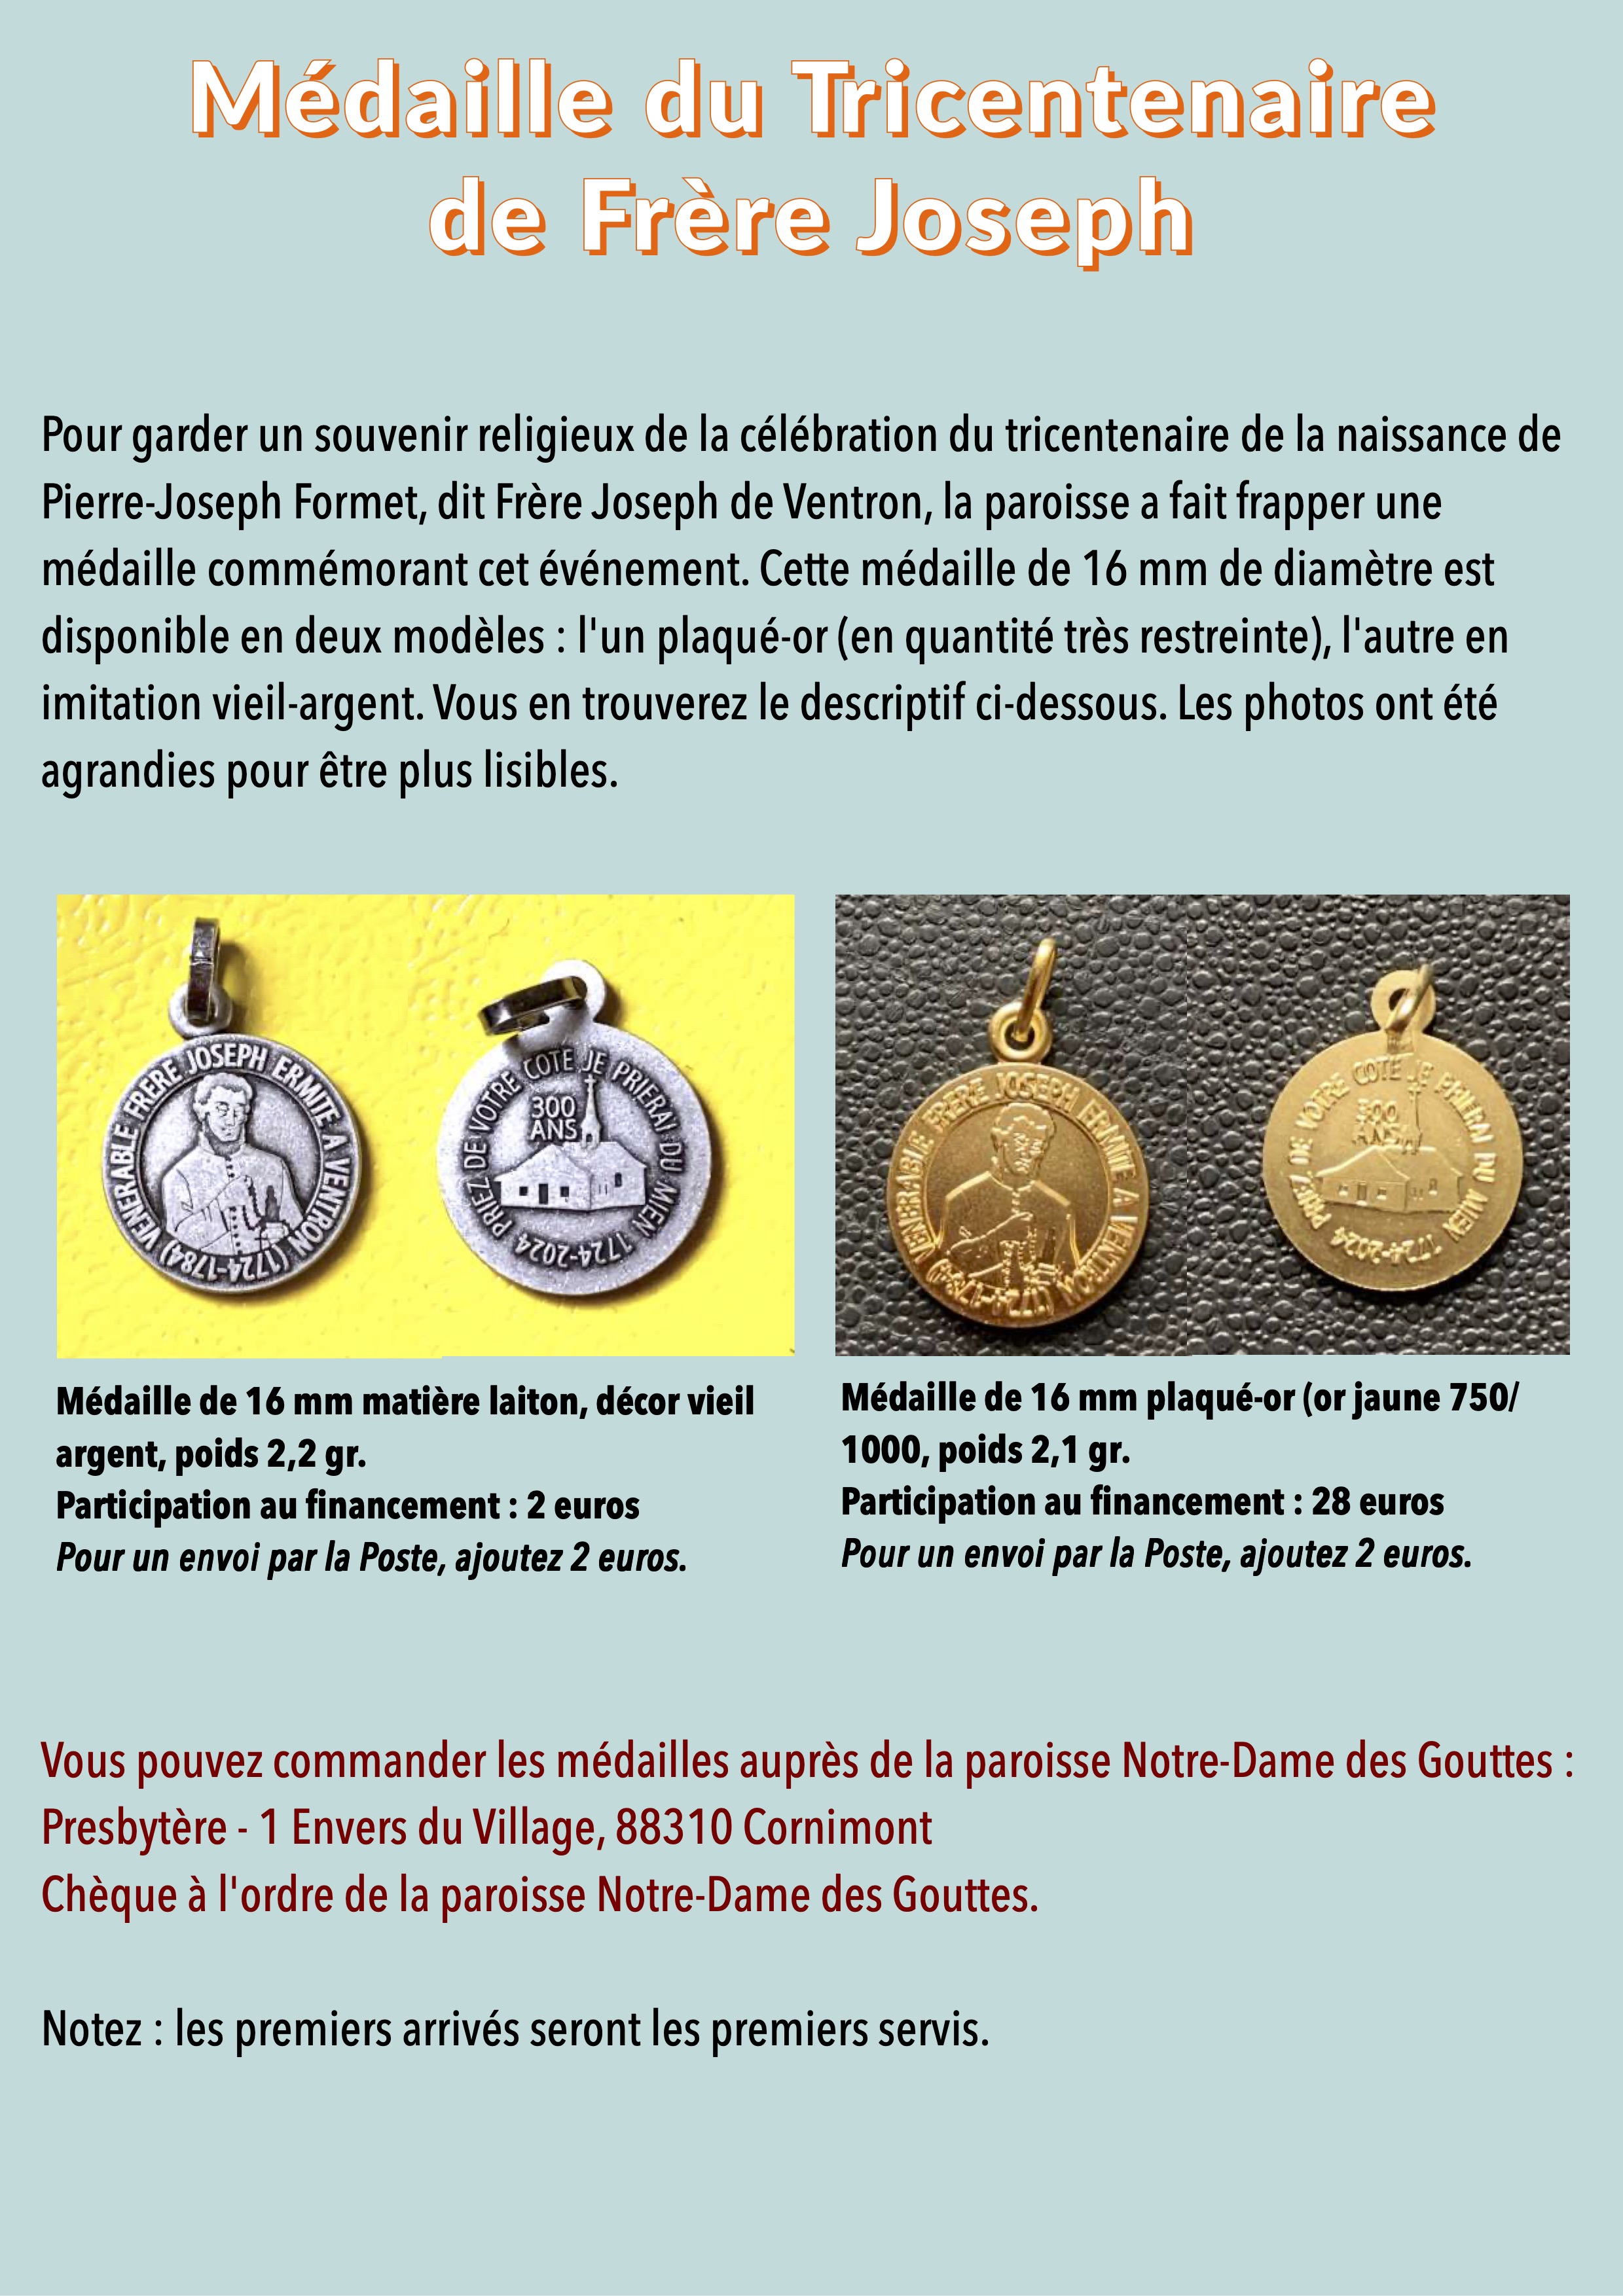 Médaille Frère Joseph tricentenaire